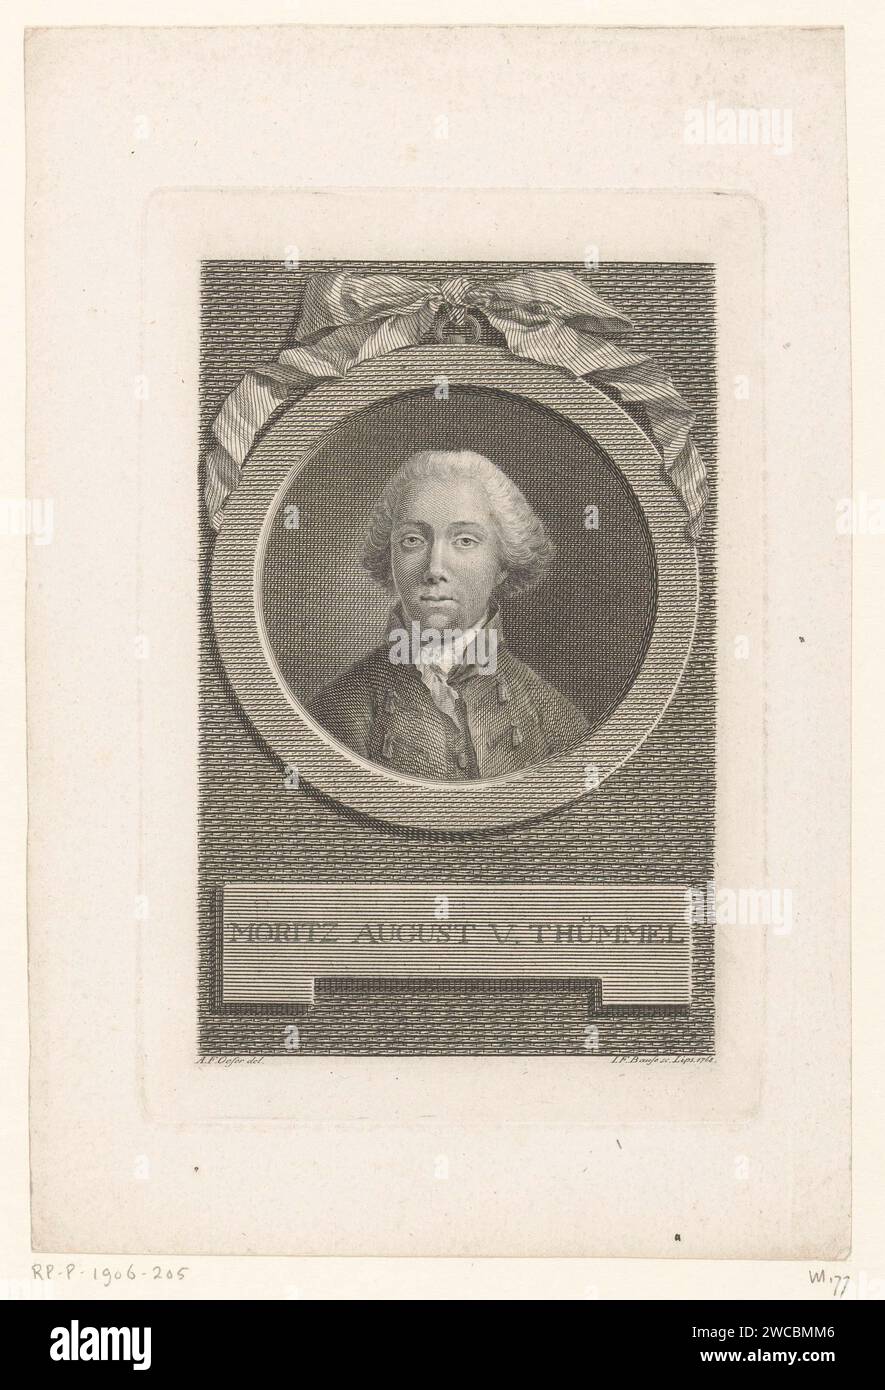 Retrato de Moritz August von Thümmel, Johann Friedrich Bause, después de Adam Friedrich Oeser, 1768 impresión de papel Leipzig grabado / grabado de personas históricas Foto de stock